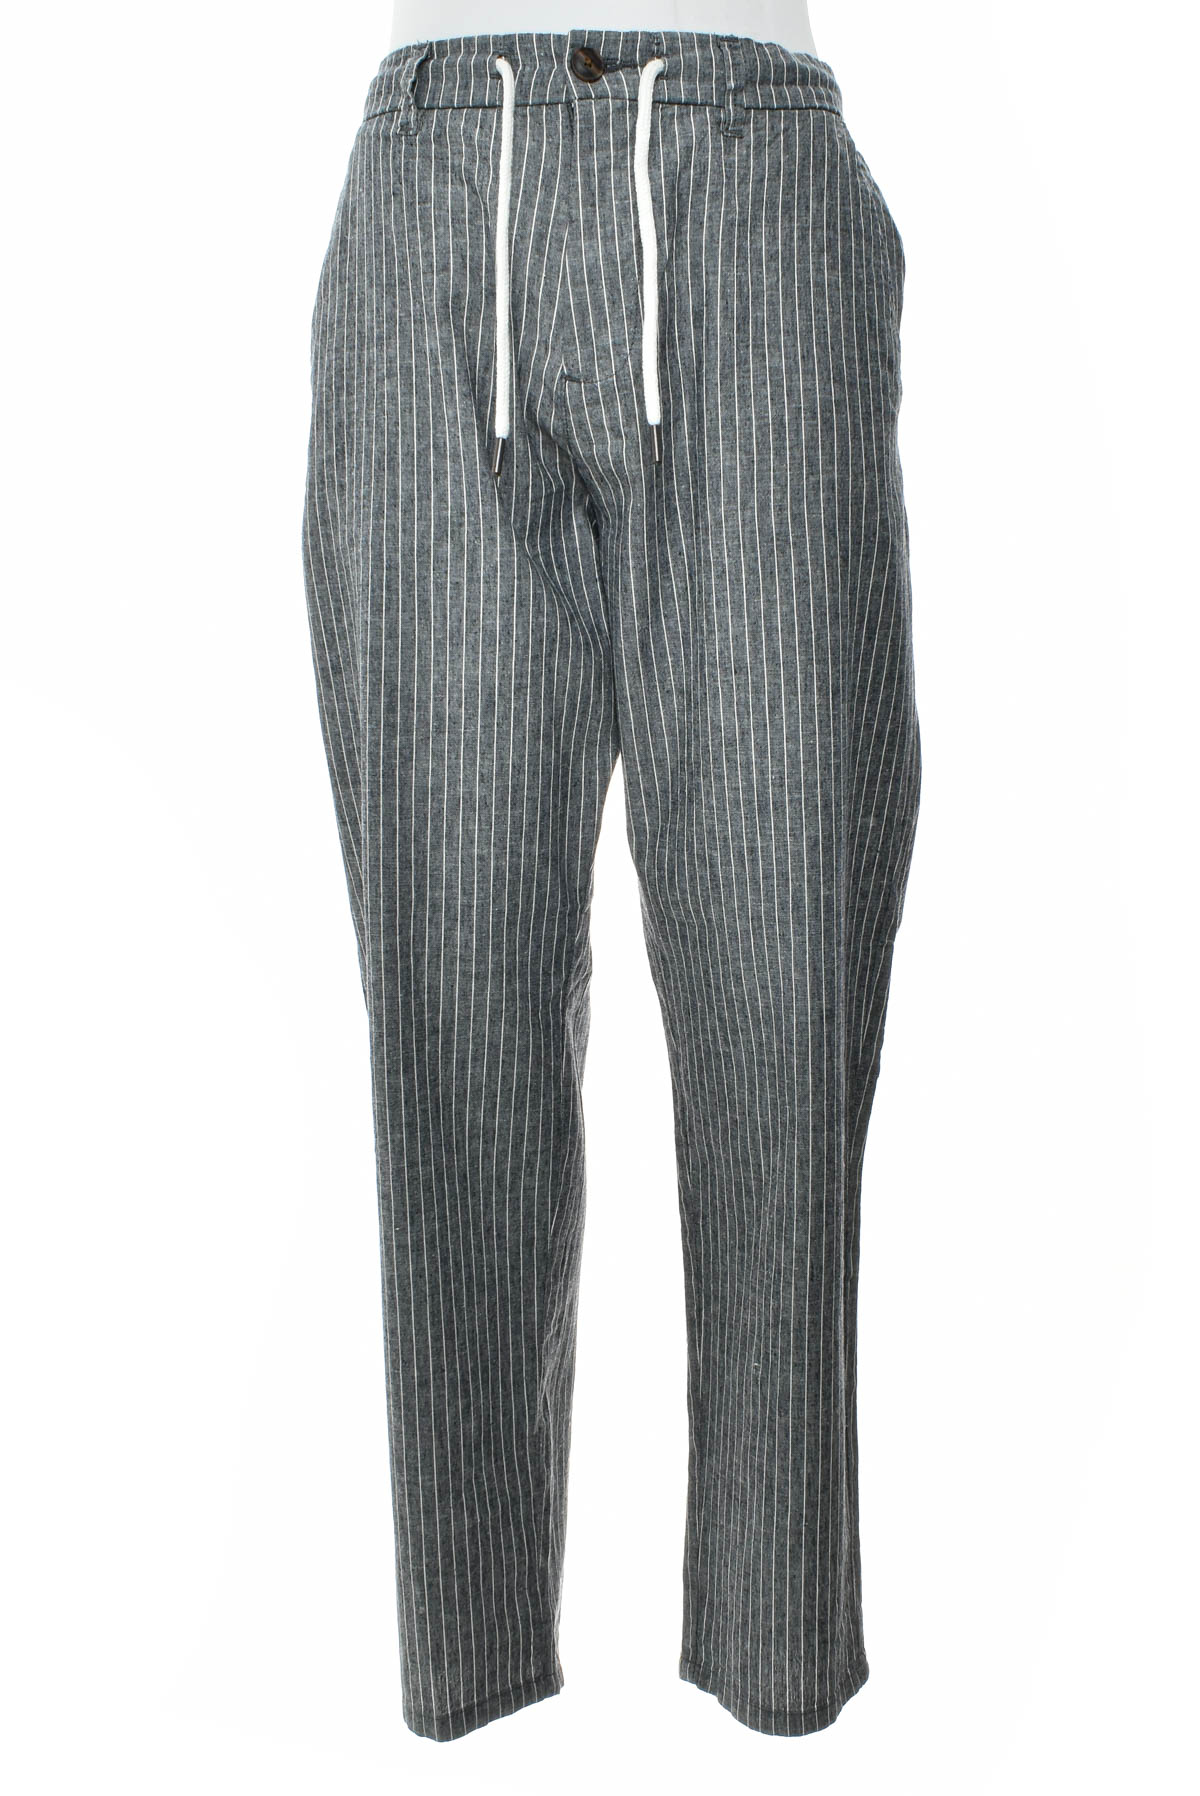 Men's trousers - ESPRIT - 0